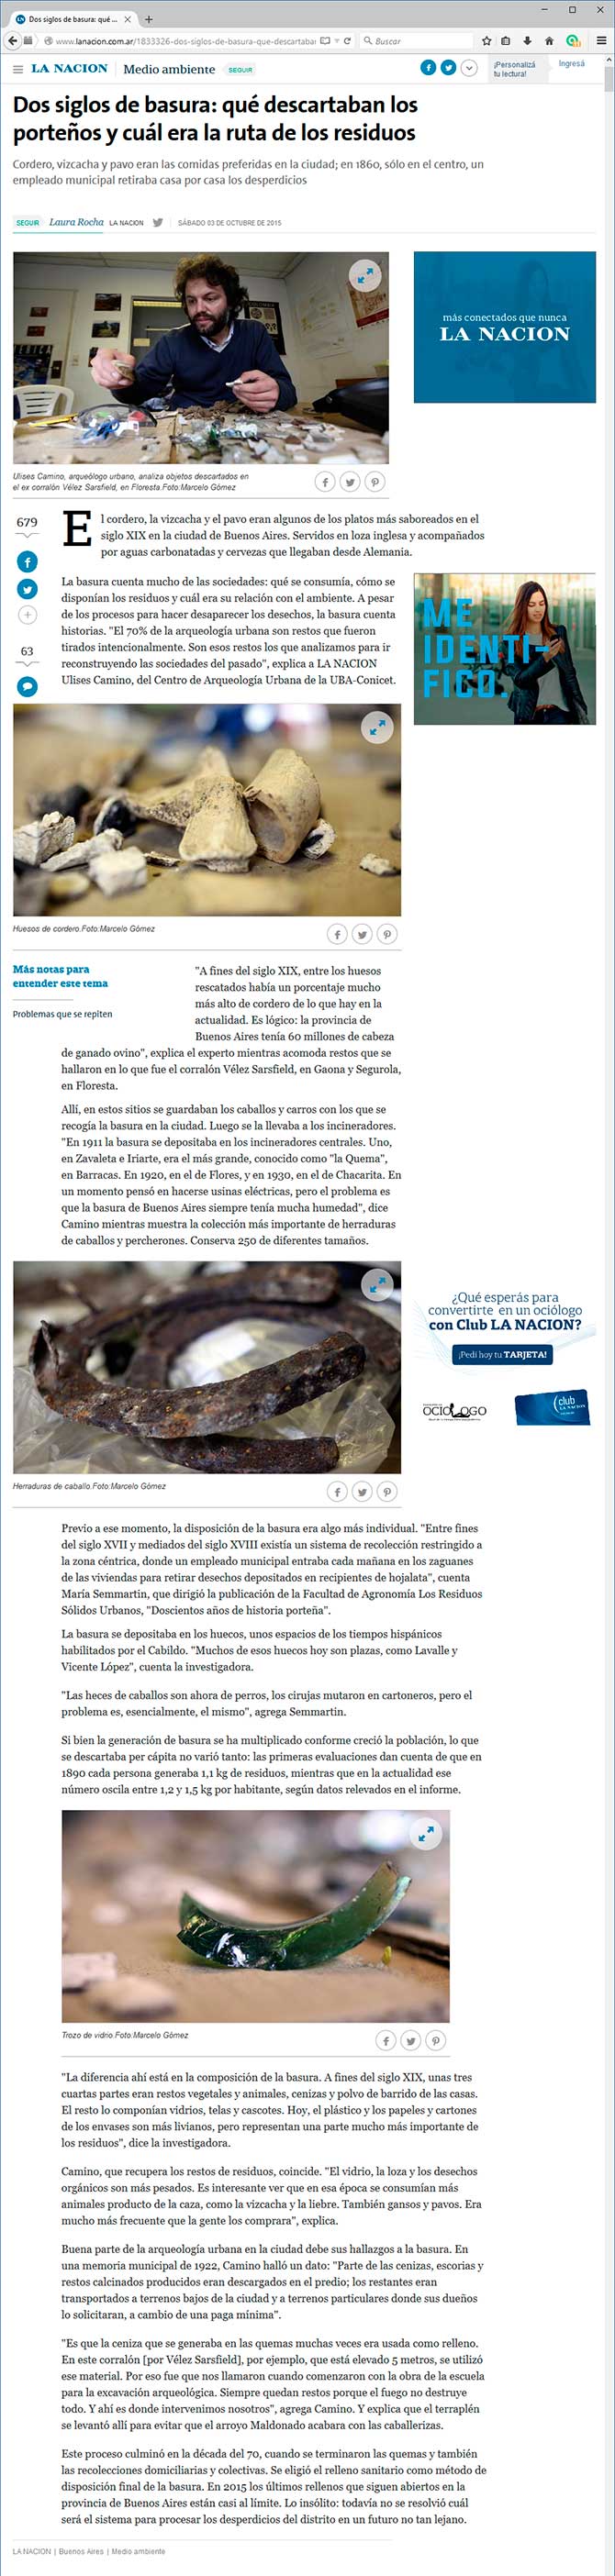 Captura de pantalla del sitio de La Nación On Line, del 3 de octubre de 2015.